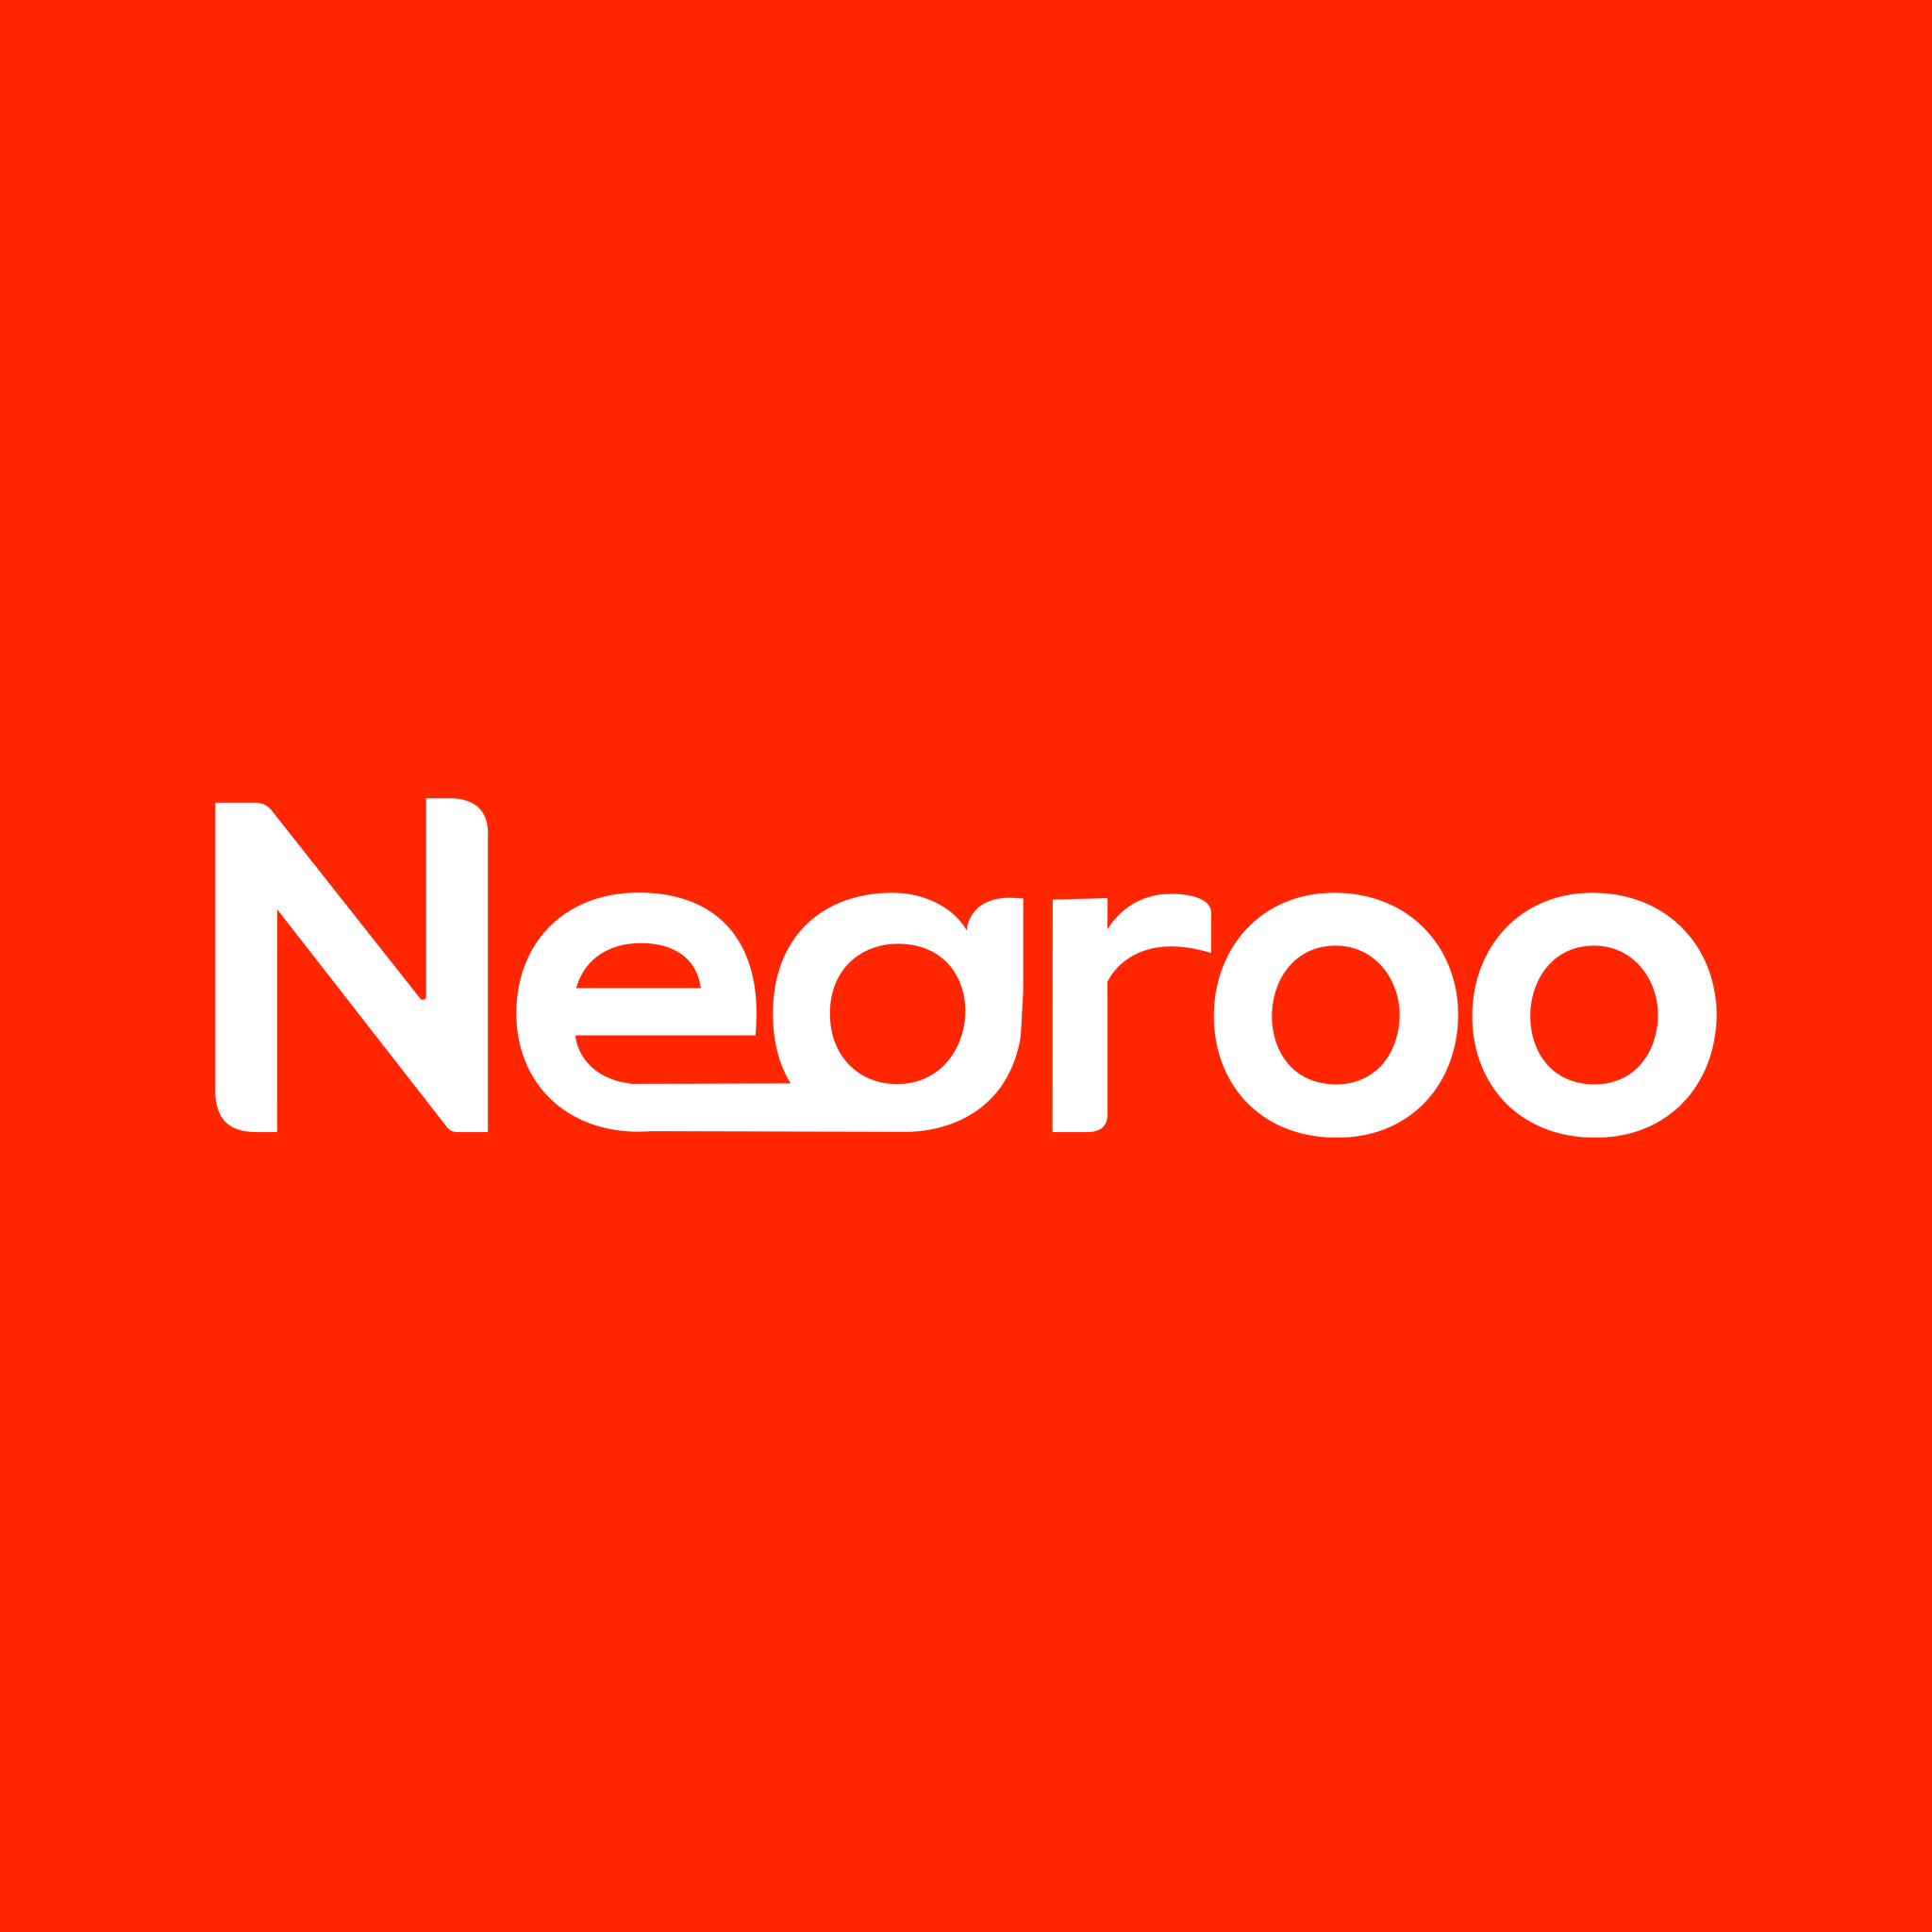 Nearoo Logo